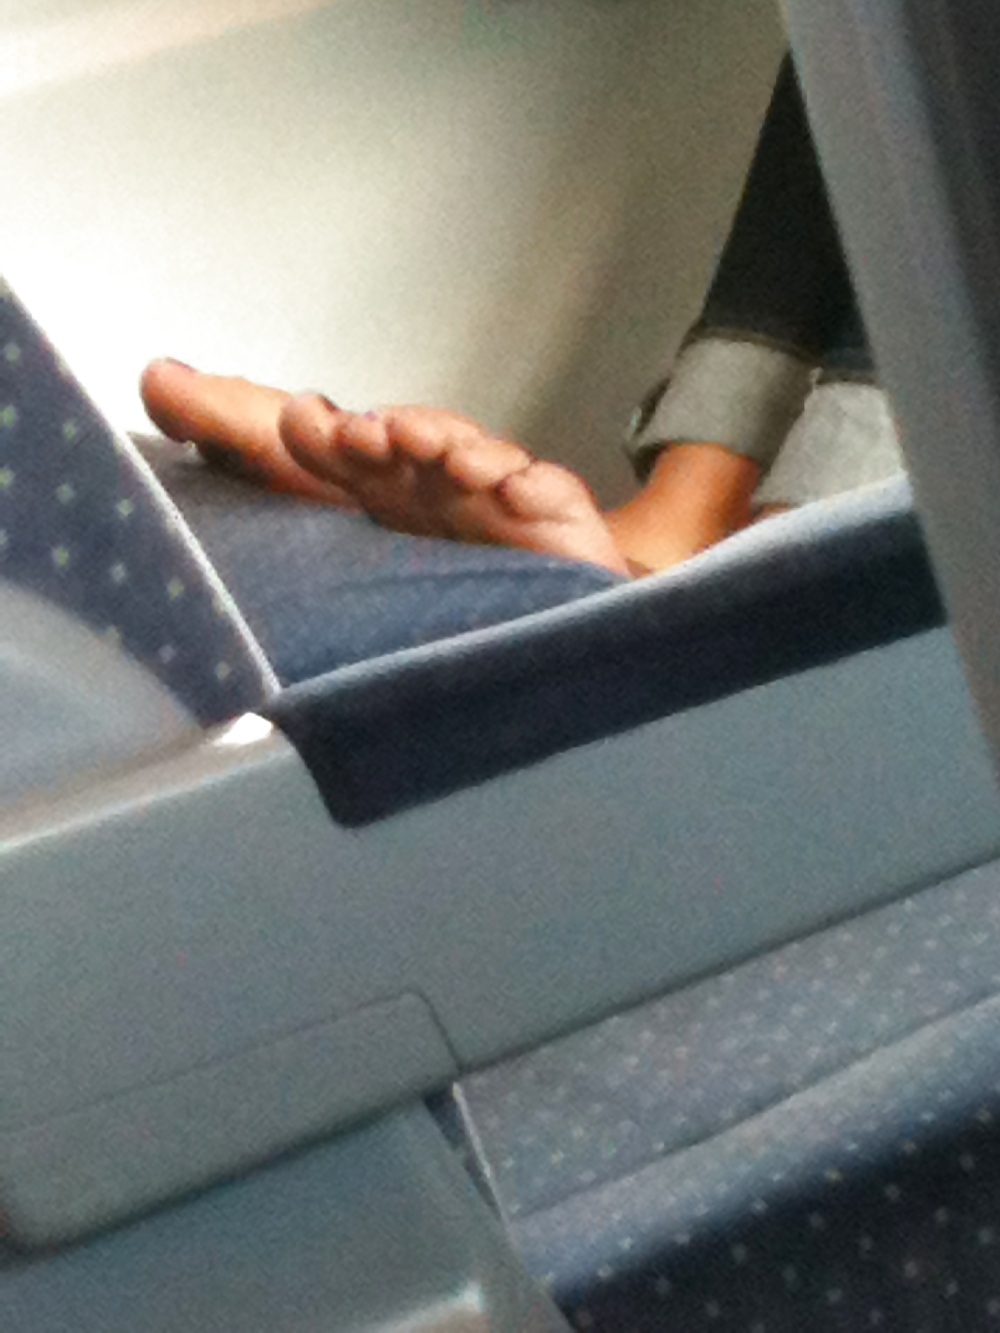 Pictures of a train ride (feet) - bilder einer zugfahrt #12269897